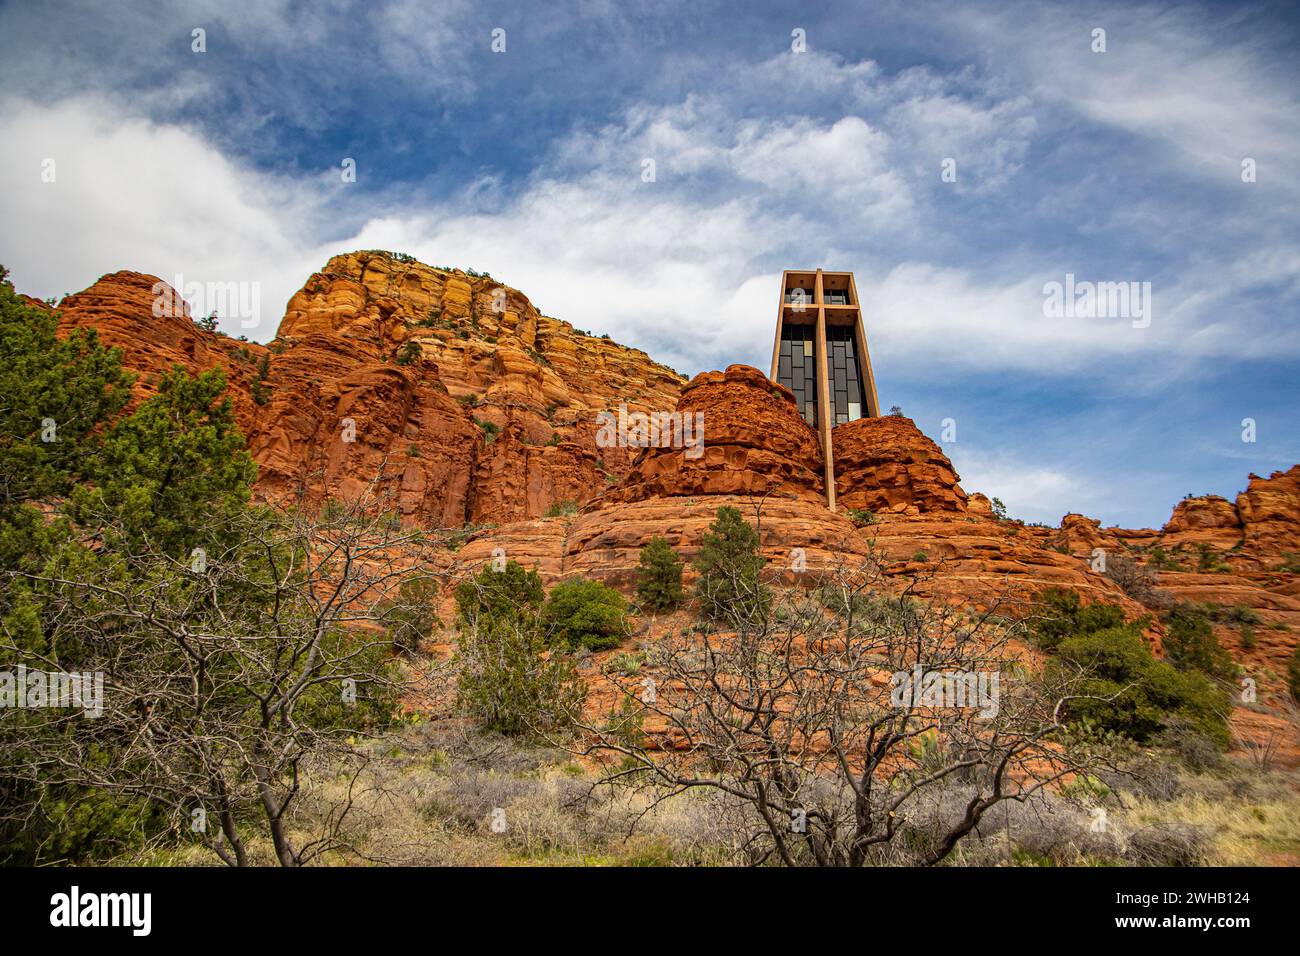 La chapelle de la Sainte-Croix est une chapelle catholique romaine construite de 1954 à 1956 dans les buttes de roche rouge de Sedona, Arizona, dans le Coconino Natio Banque D'Images